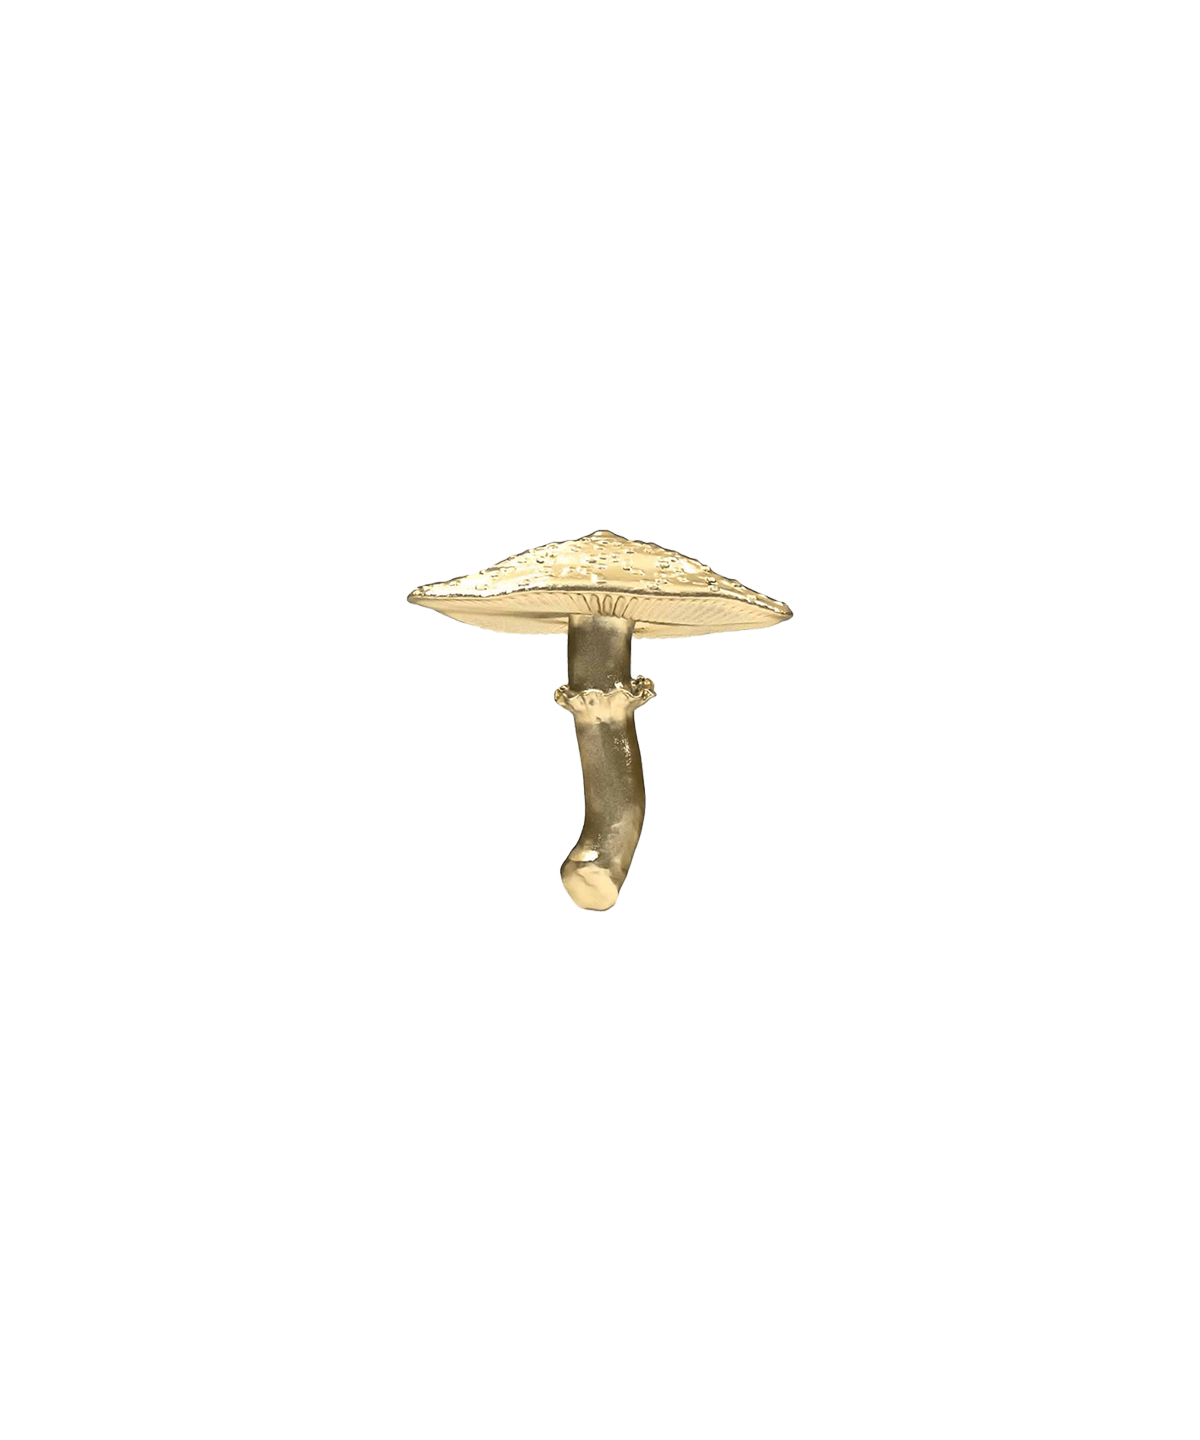 Mushroom 06 End